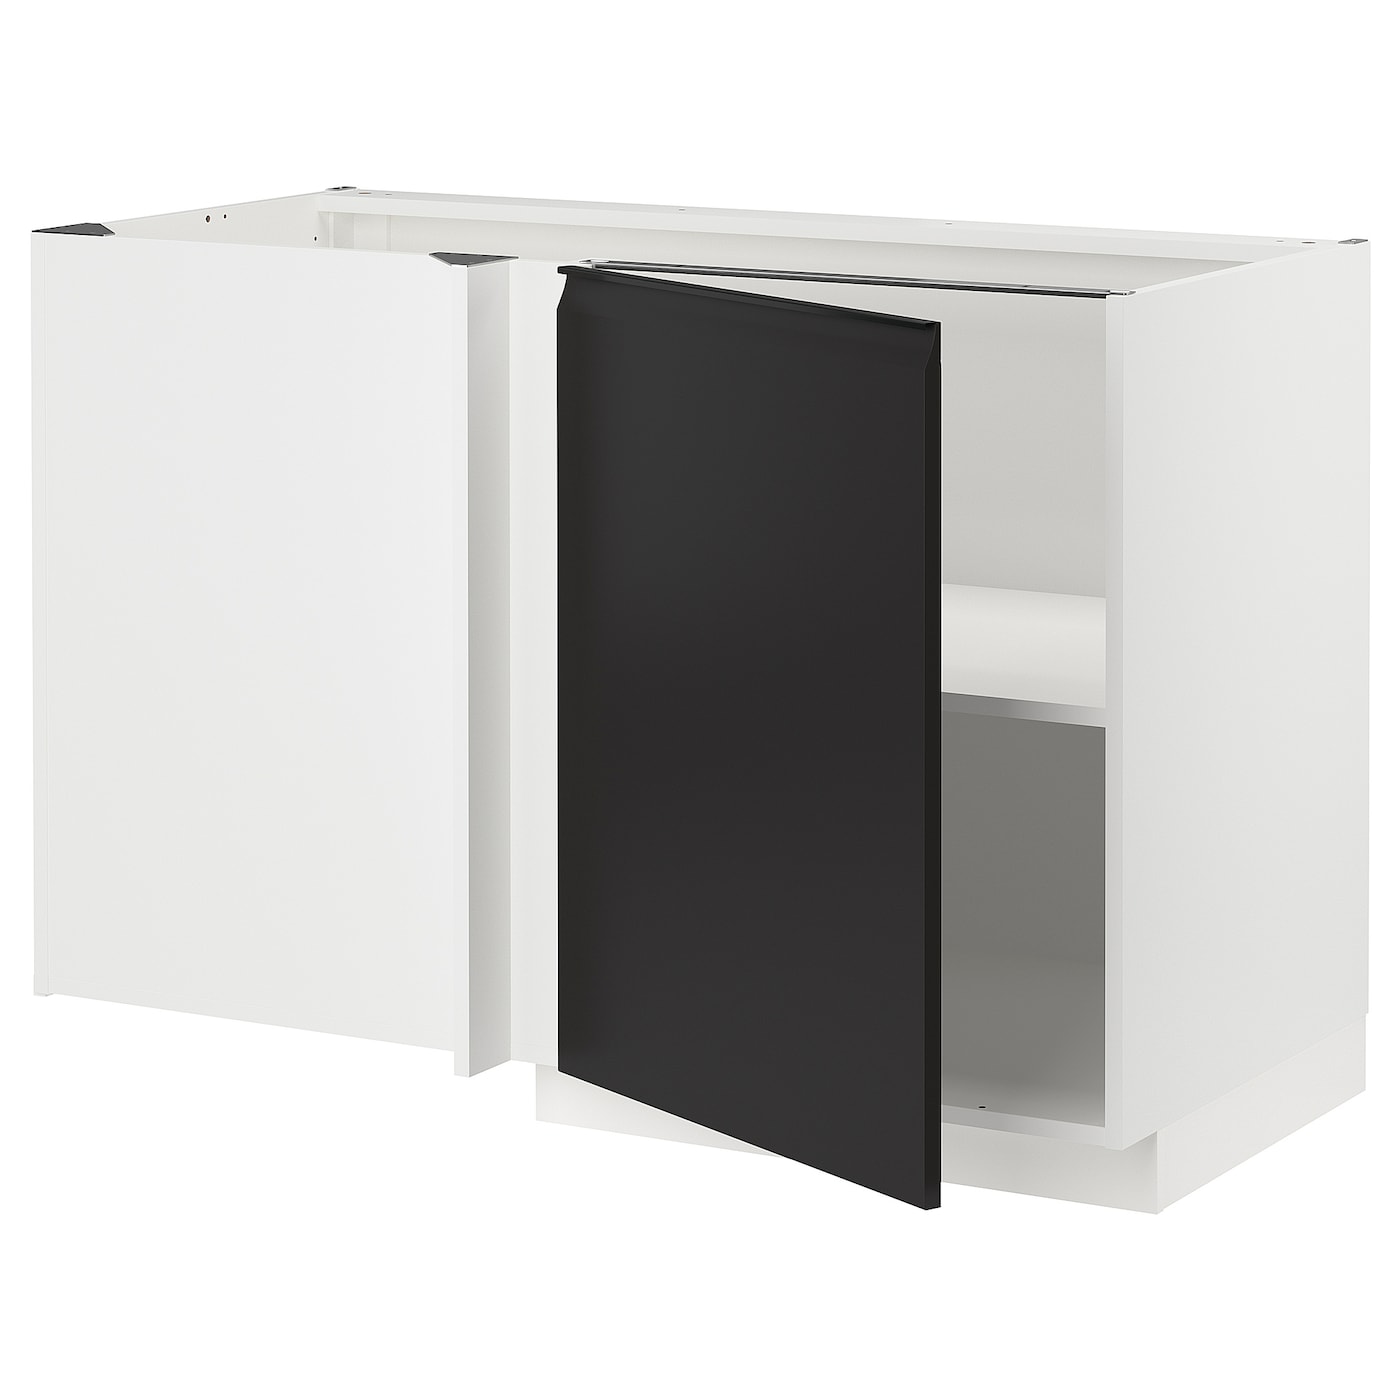 Напольный шкаф - METOD IKEA/ МЕТОД ИКЕА,  128х68 см, белый/черный